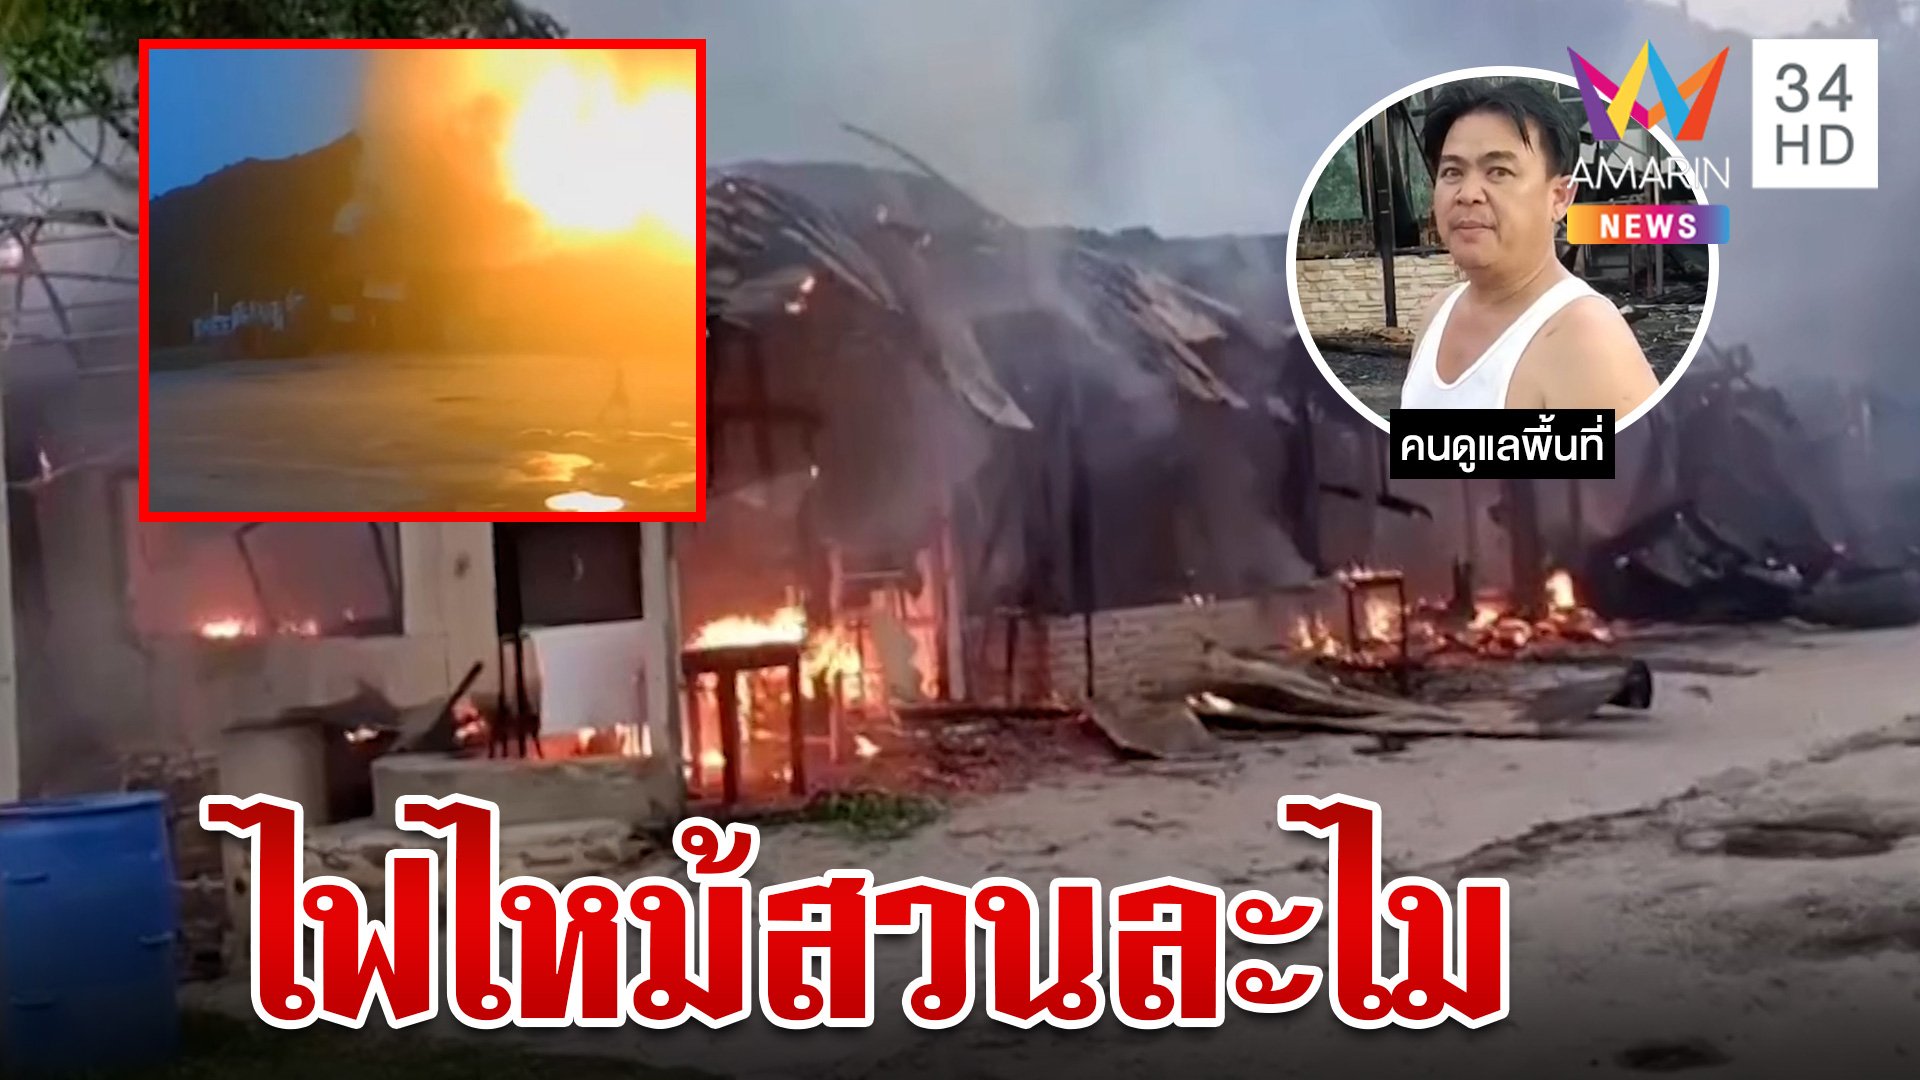 ไฟไหม้สวนละไม ที่เที่ยวดังระยอง เสียหายนับล้านบาท | ทุบโต๊ะข่าว | 1 ส.ค. 66 | AMARIN TVHD34